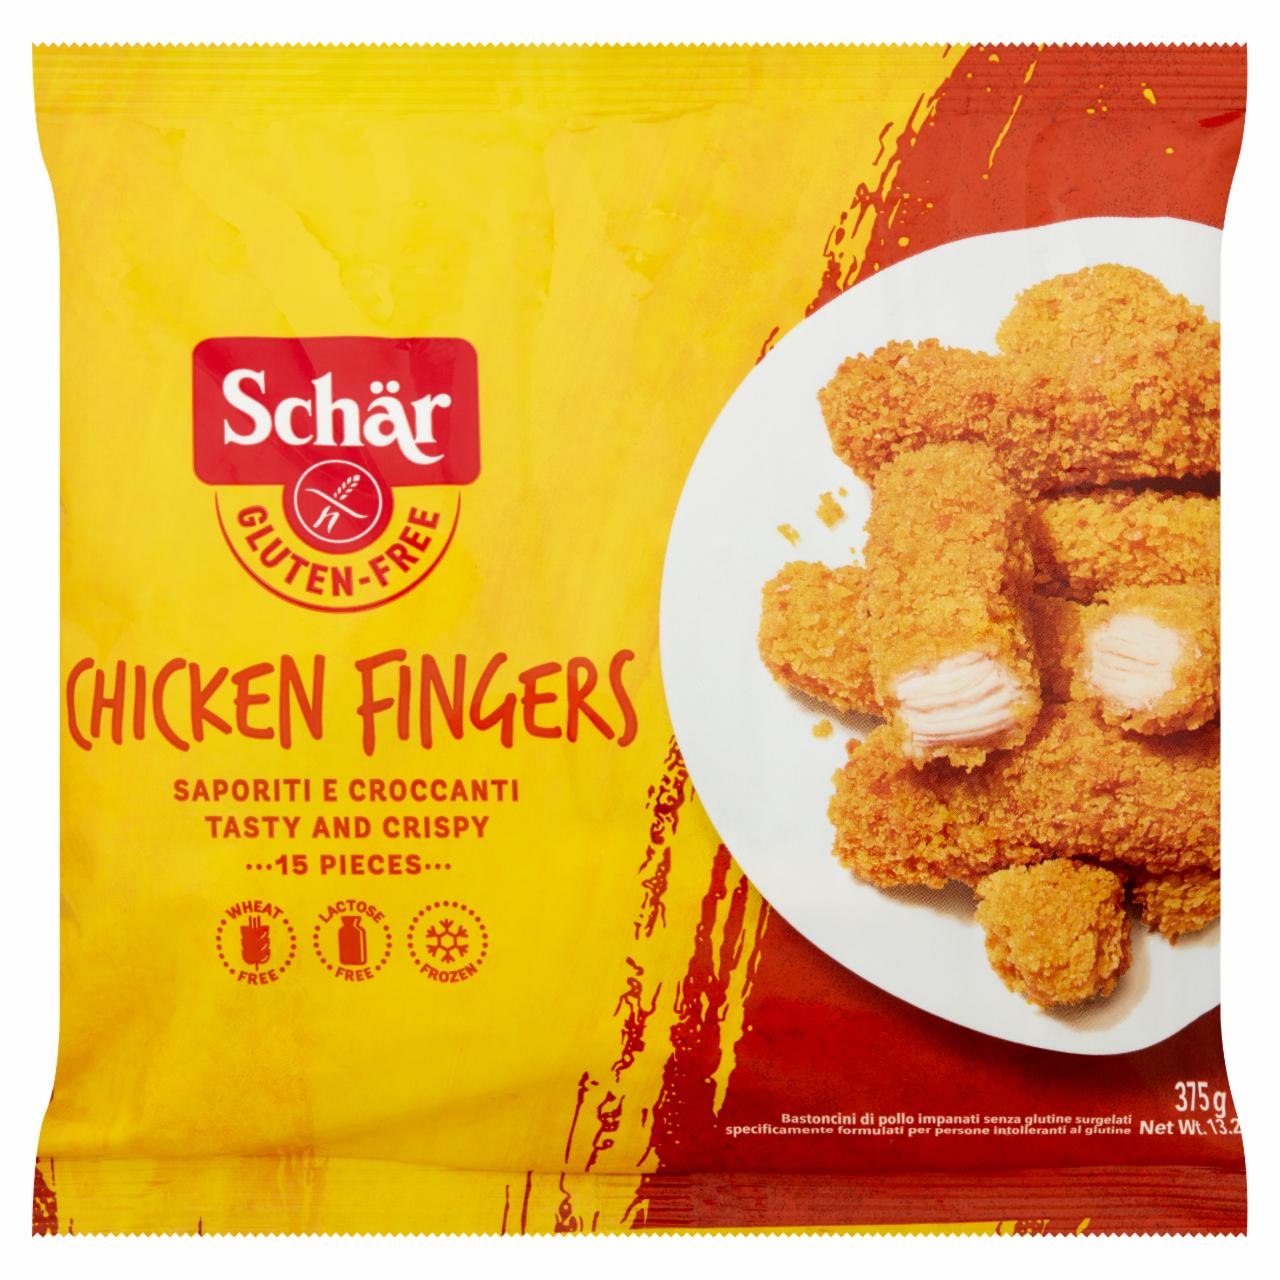 Képek - Schär Chicken Fingers mélyfagyasztott gluténmentes ropogós panírozott csirkefalatok 15 db 375 g